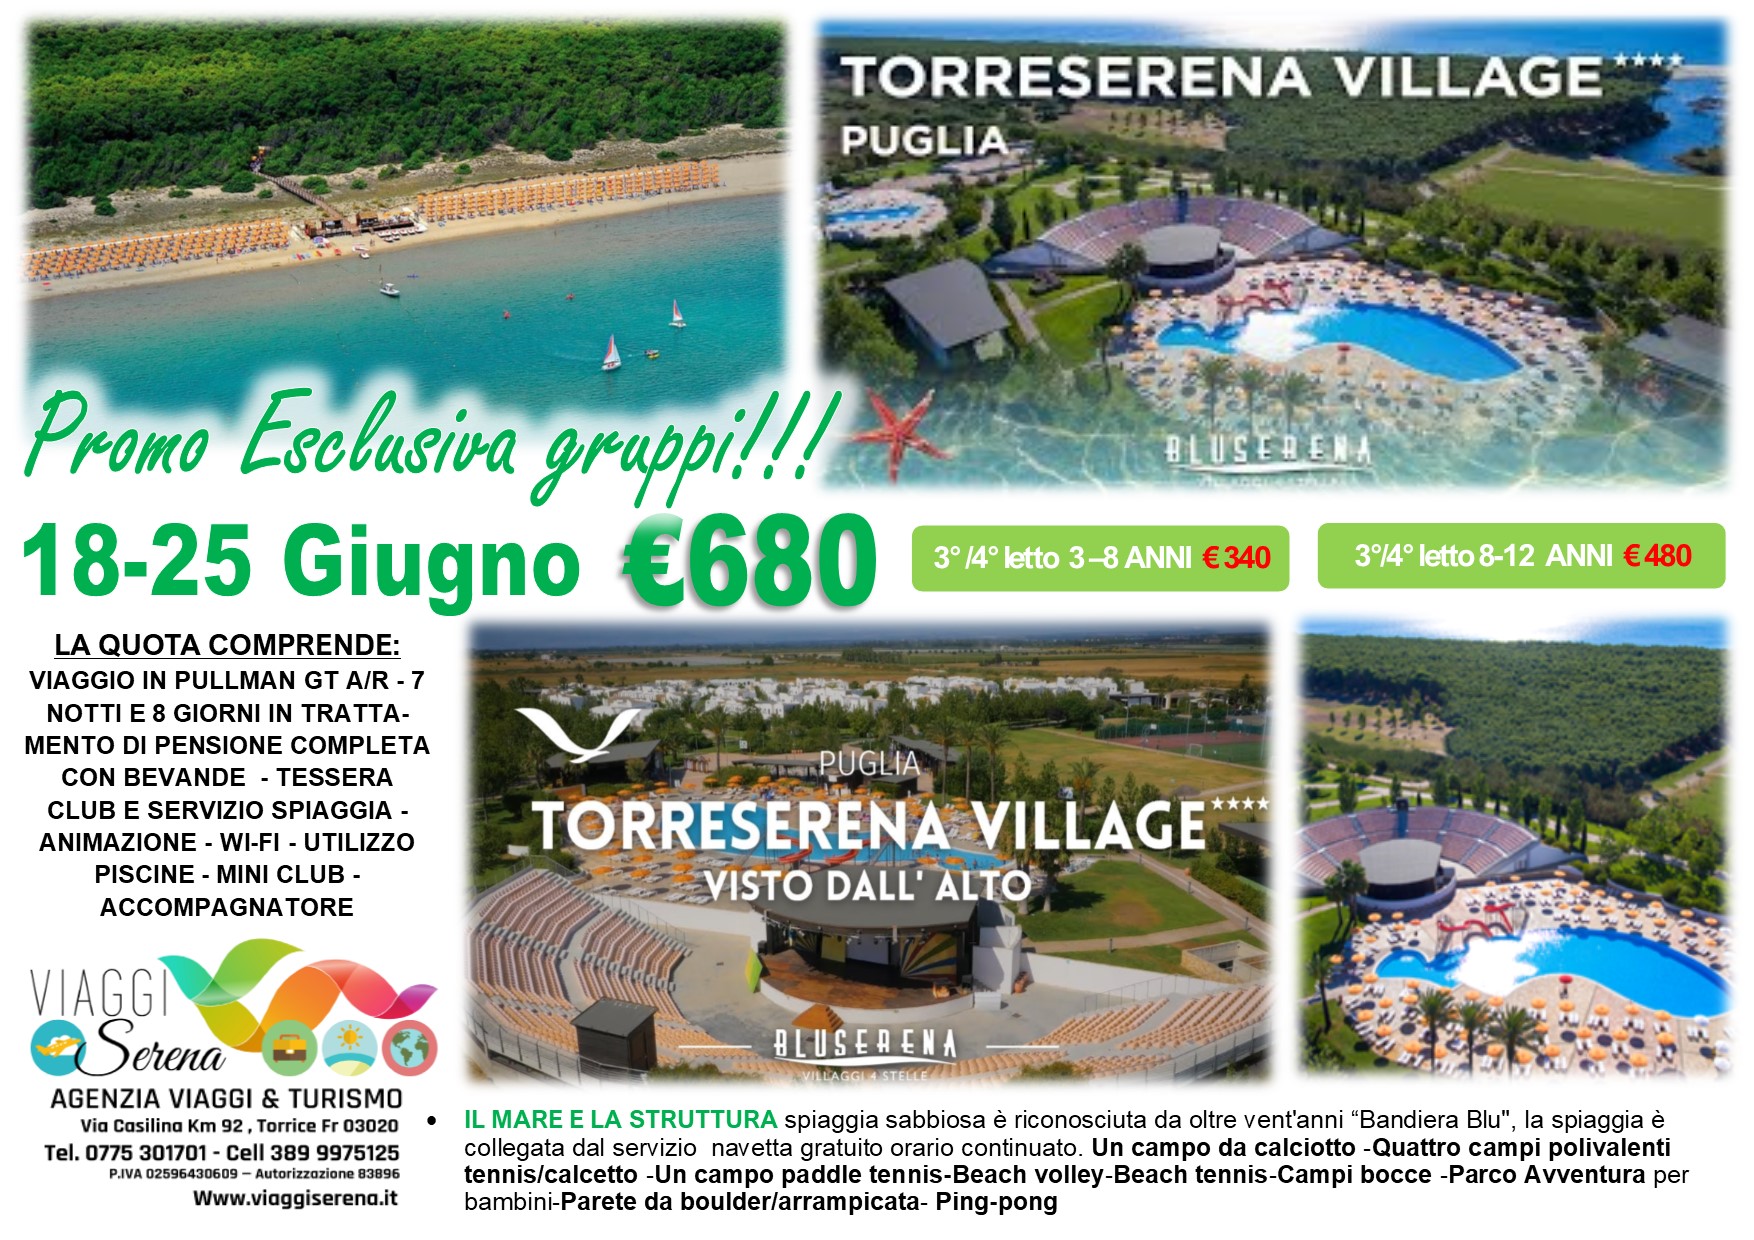 Viaggi di Gruppo: Soggiorno Mare BLU SERENA “Villaggio TorreSerena” 18-25 Giugno €680,00